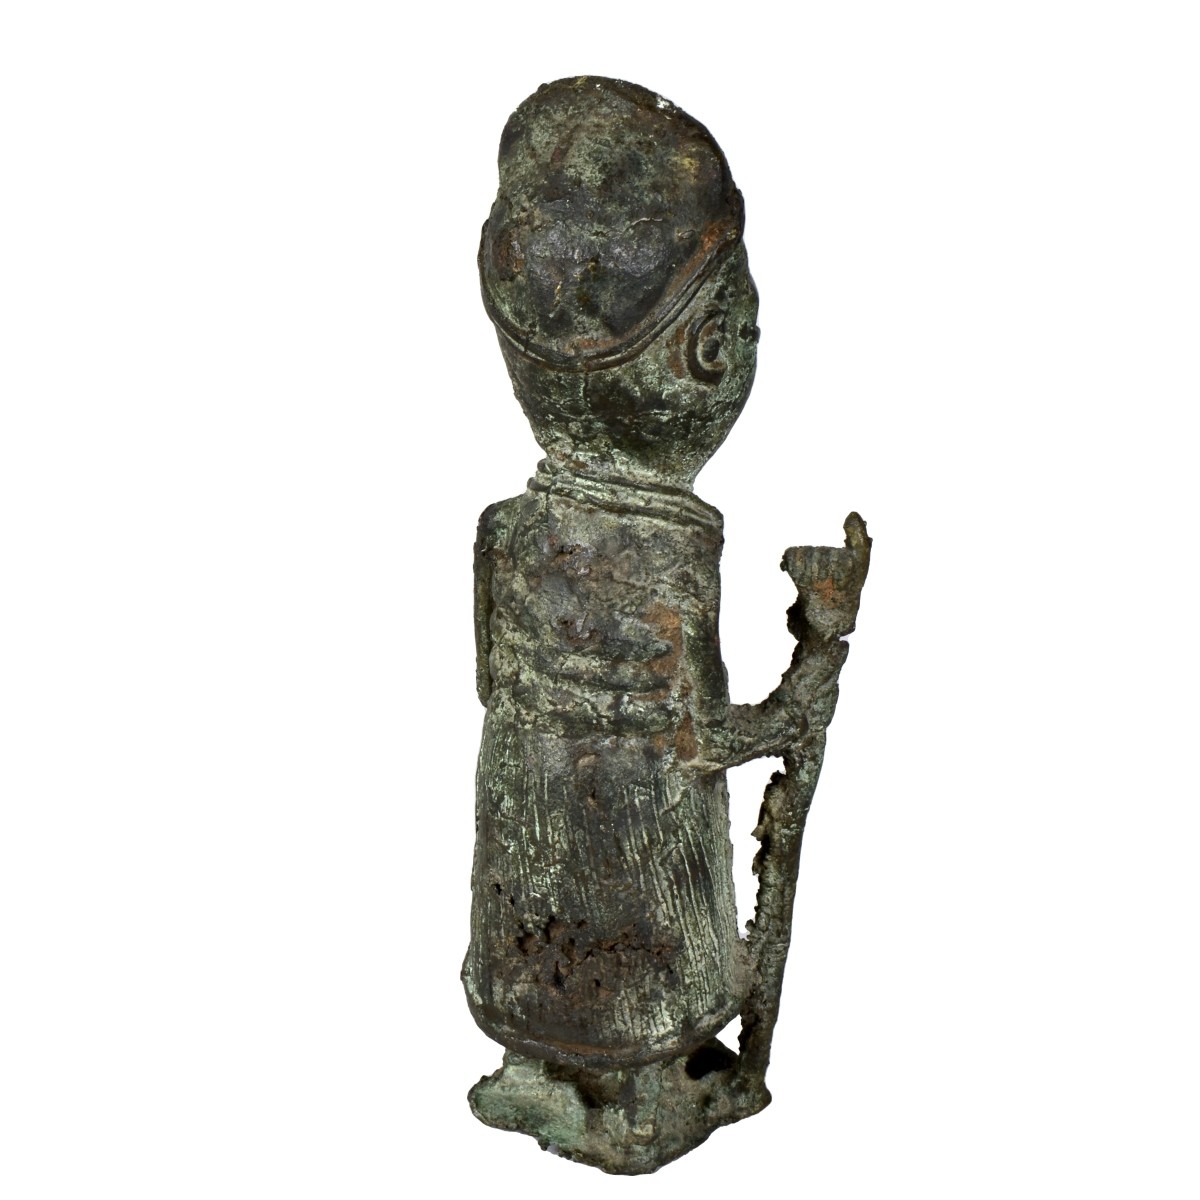 African Benin Bronze Sculpture